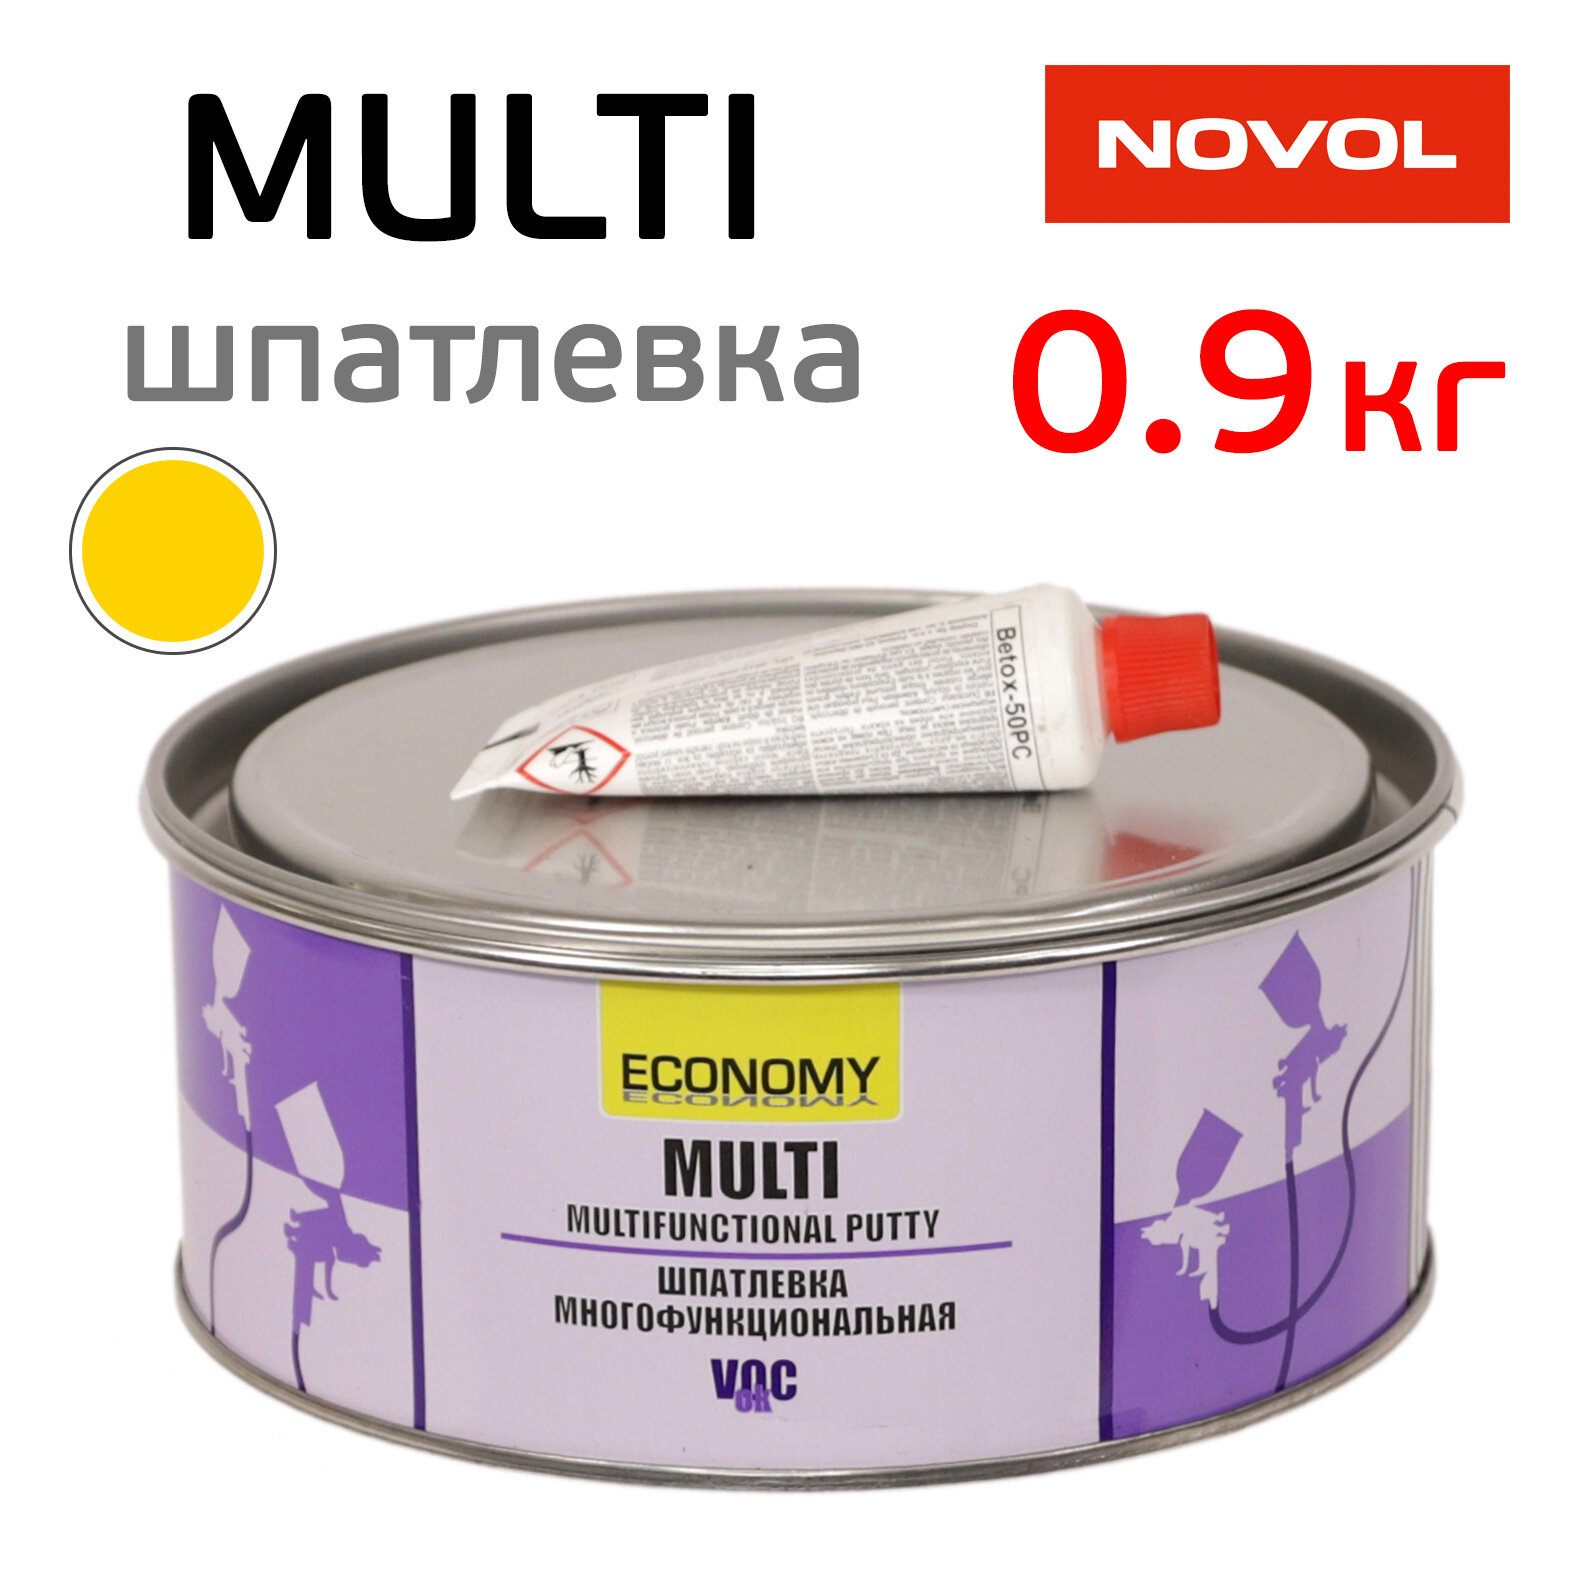 Шпатлевка Novol Asia MULTI (09кг) многофункциональная (мягкая цвет желтый)